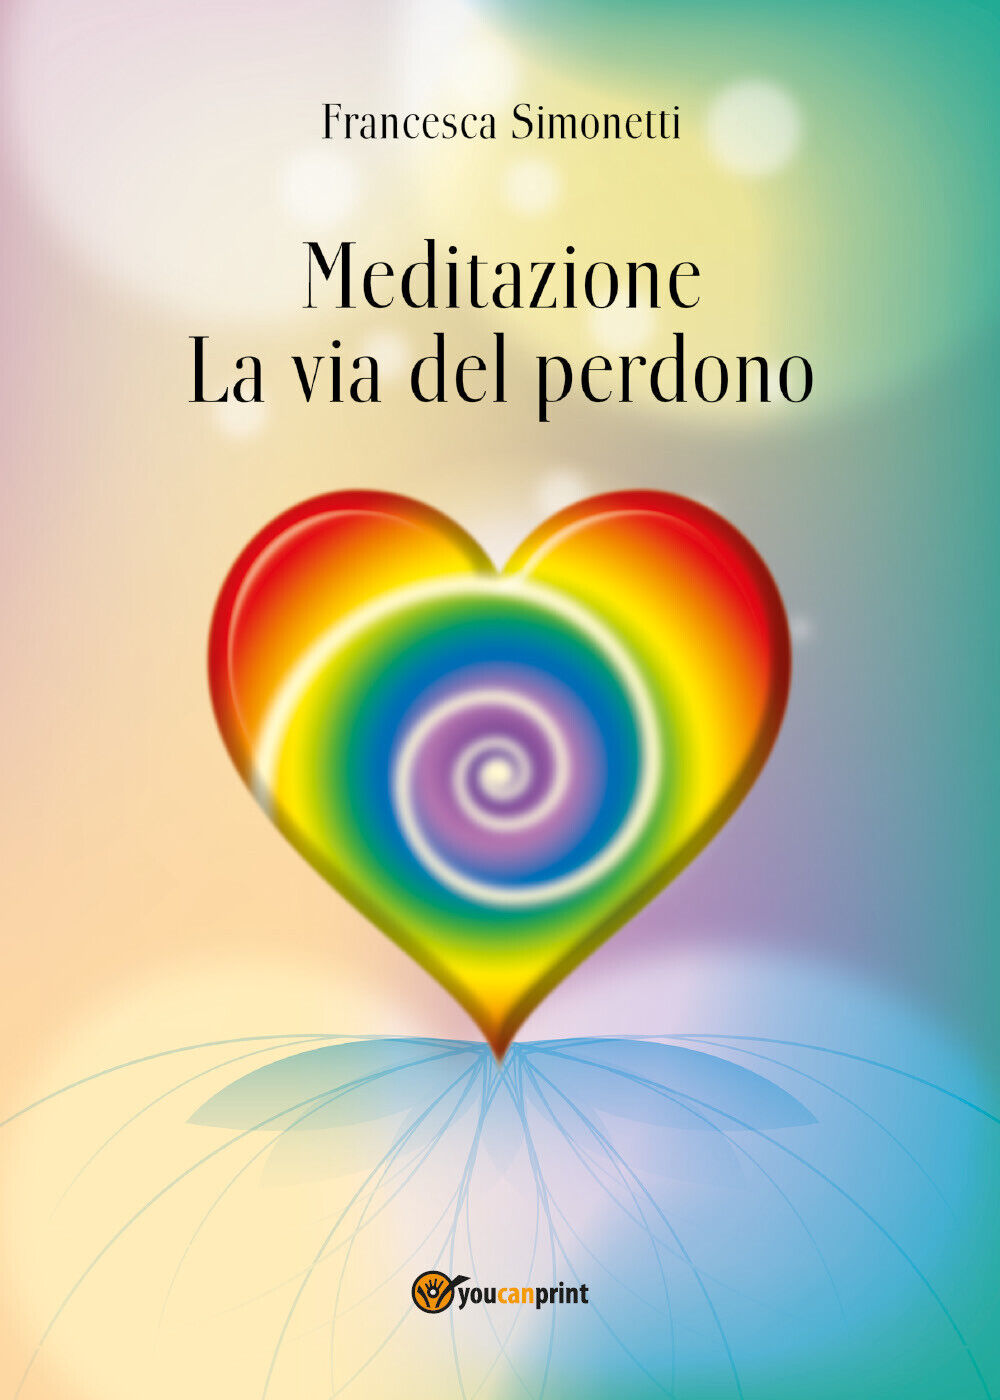 MEDITAZIONE - La Via del Perdono, Francesca Simonetti,  2018,  Youcanprint